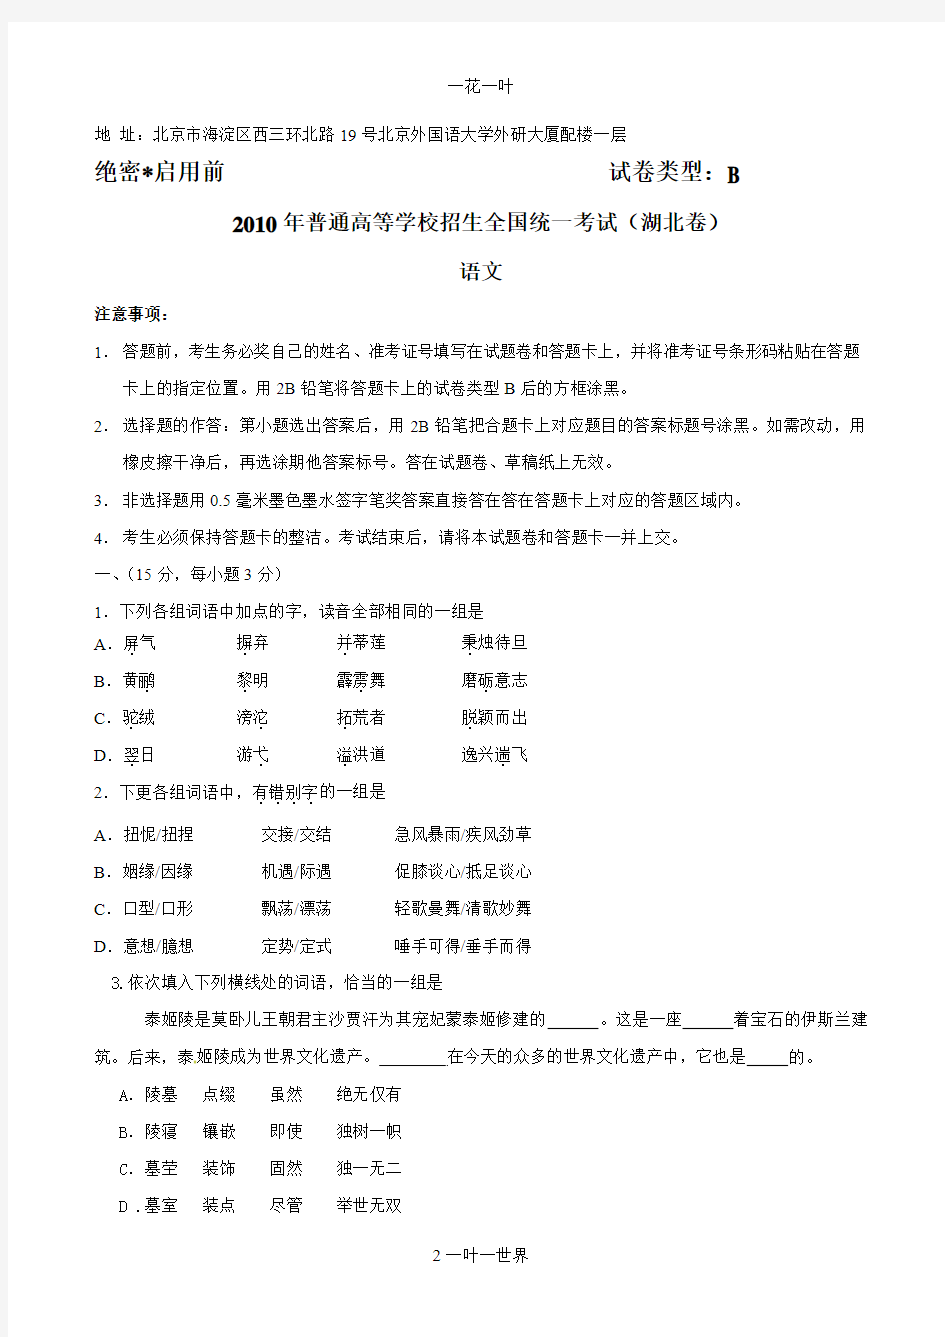 高考真题2010年高校招生全国统一考试湖北省语文卷